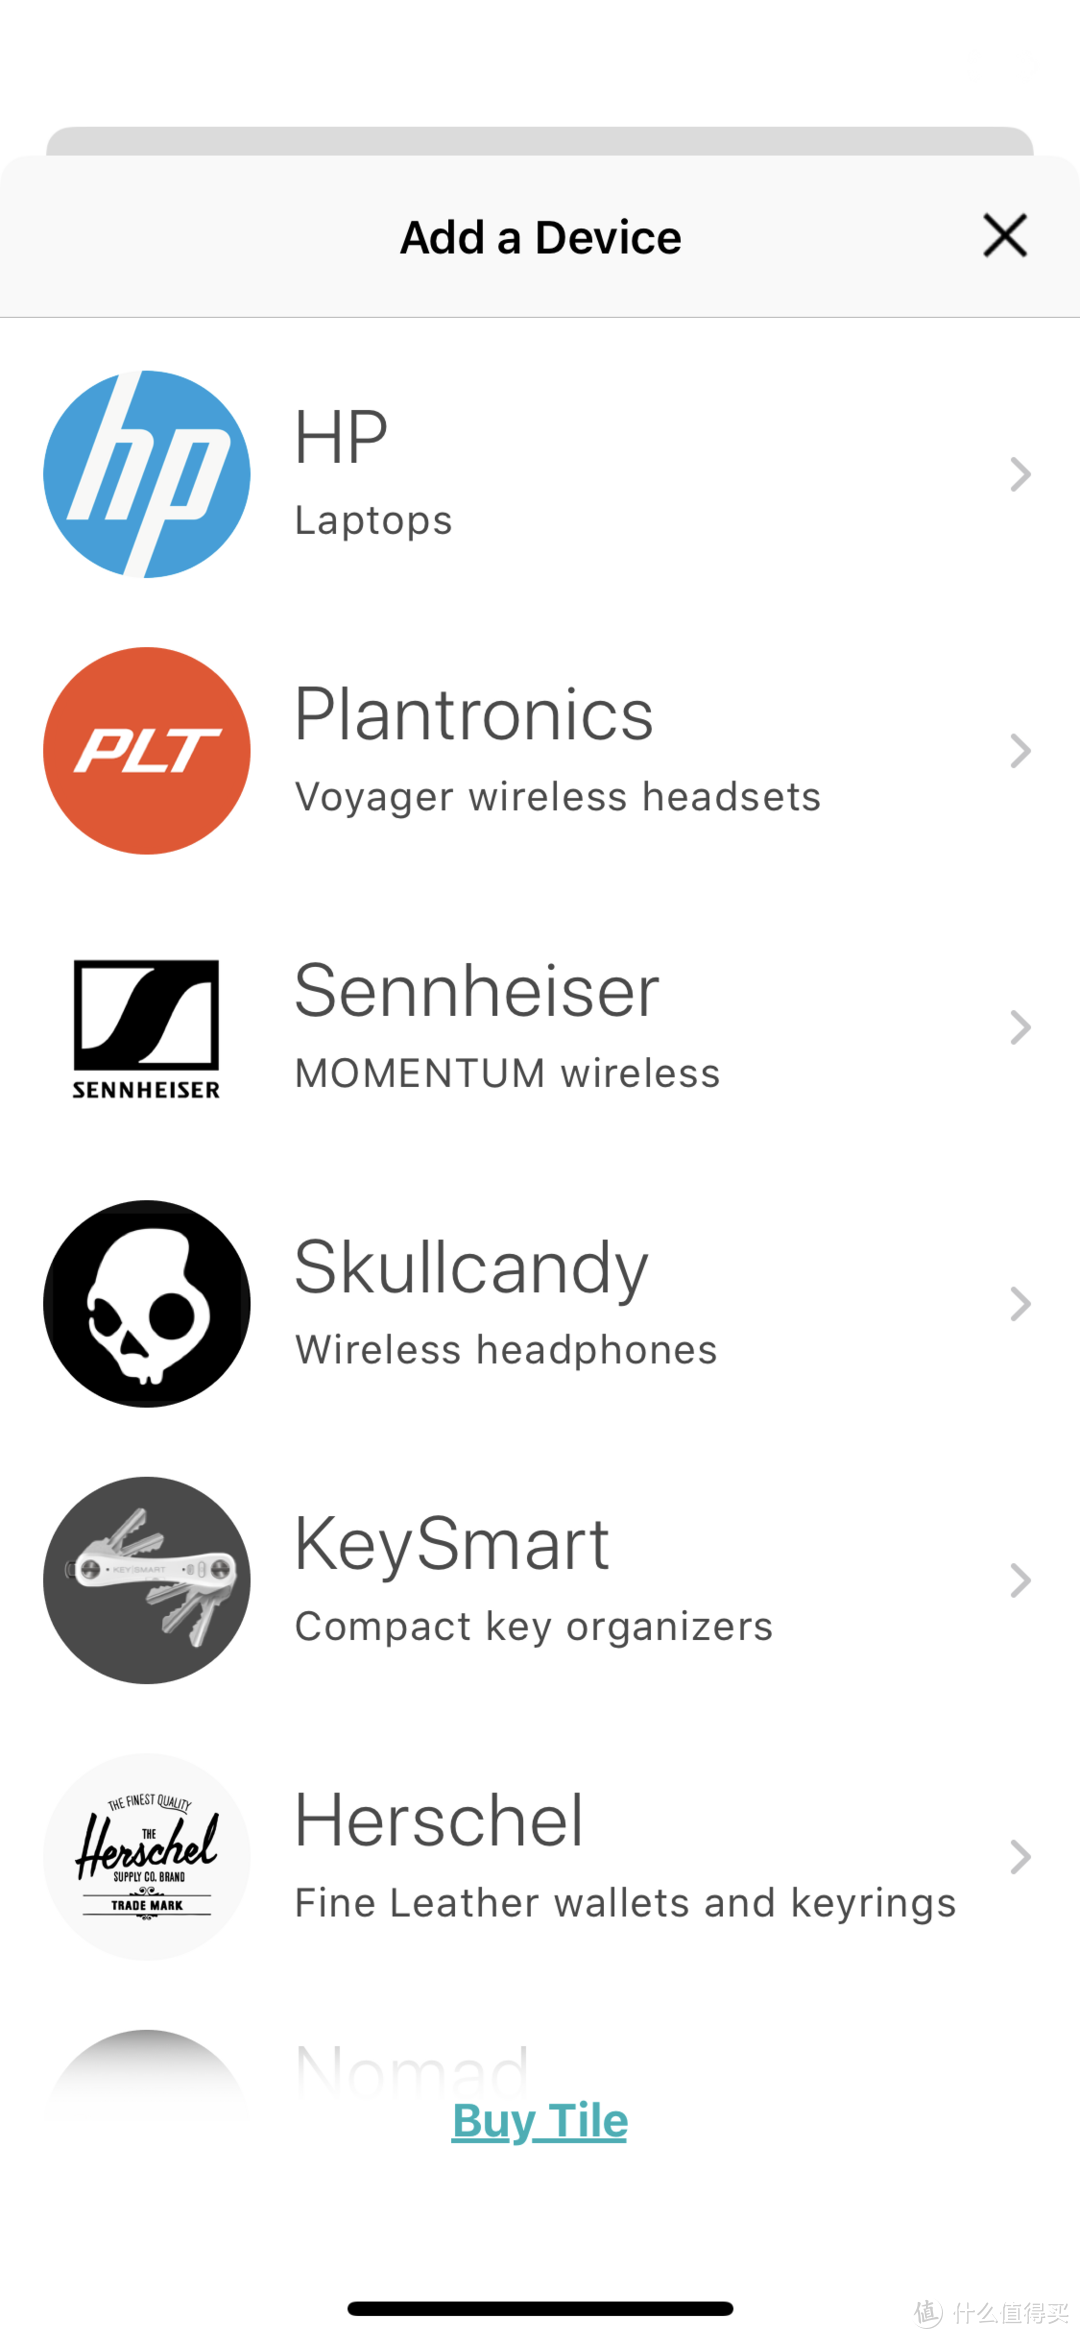 可以看到现在Tile已经不止和KeySmart合作了，还和很多时尚品牌，耳机品牌甚至是惠普电脑合作在他们的产品力嵌入Tile的定位器。